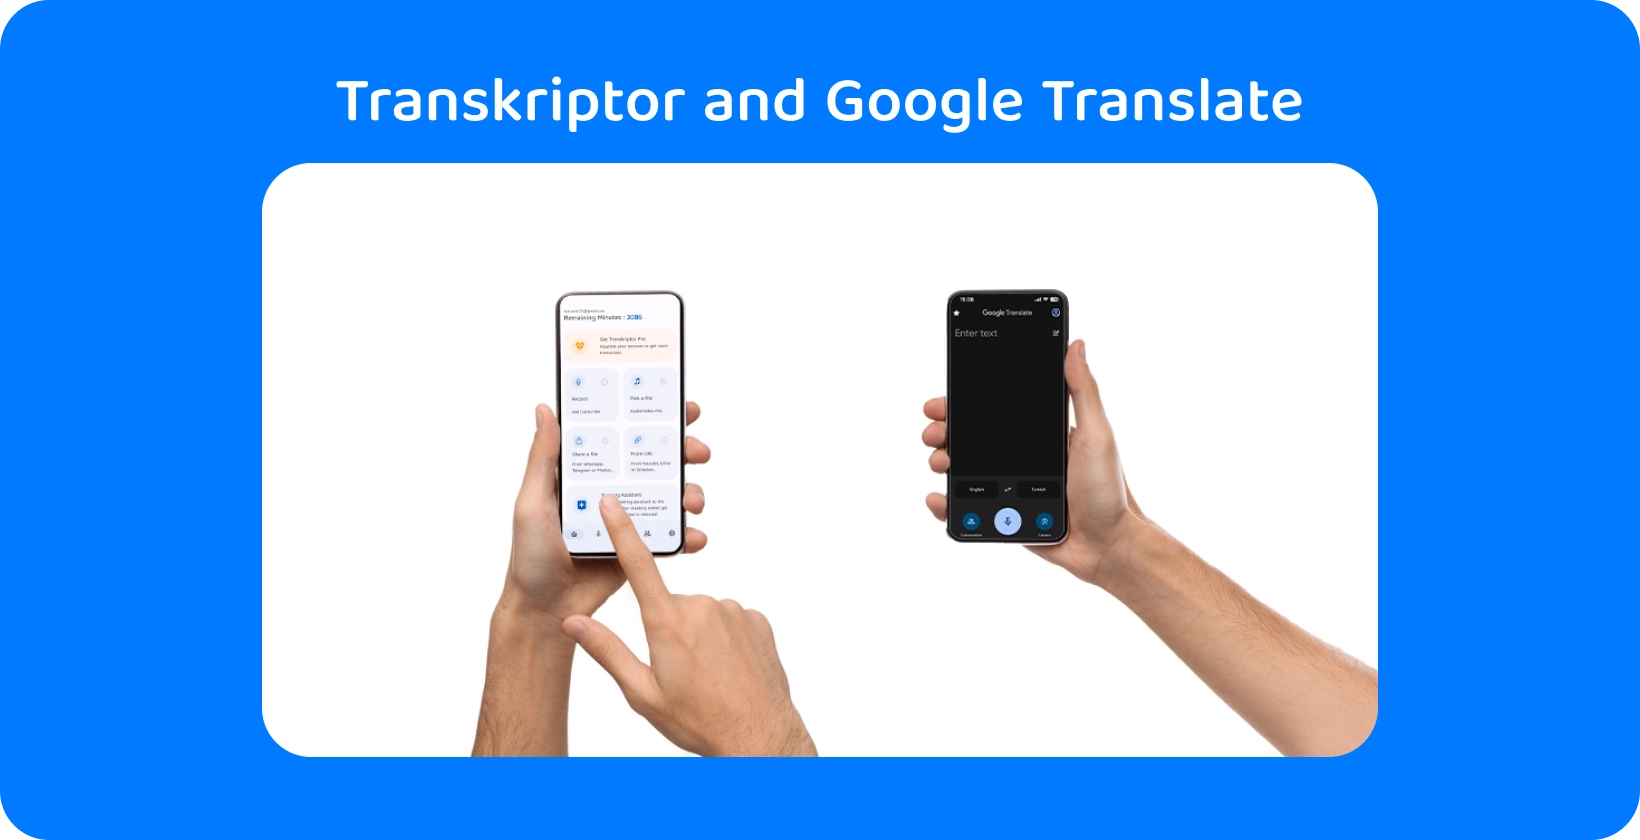 Duas mãos segurando smartphones com Transkriptor e Google Traduzir, demonstrando transcrição e tradução de áudio.